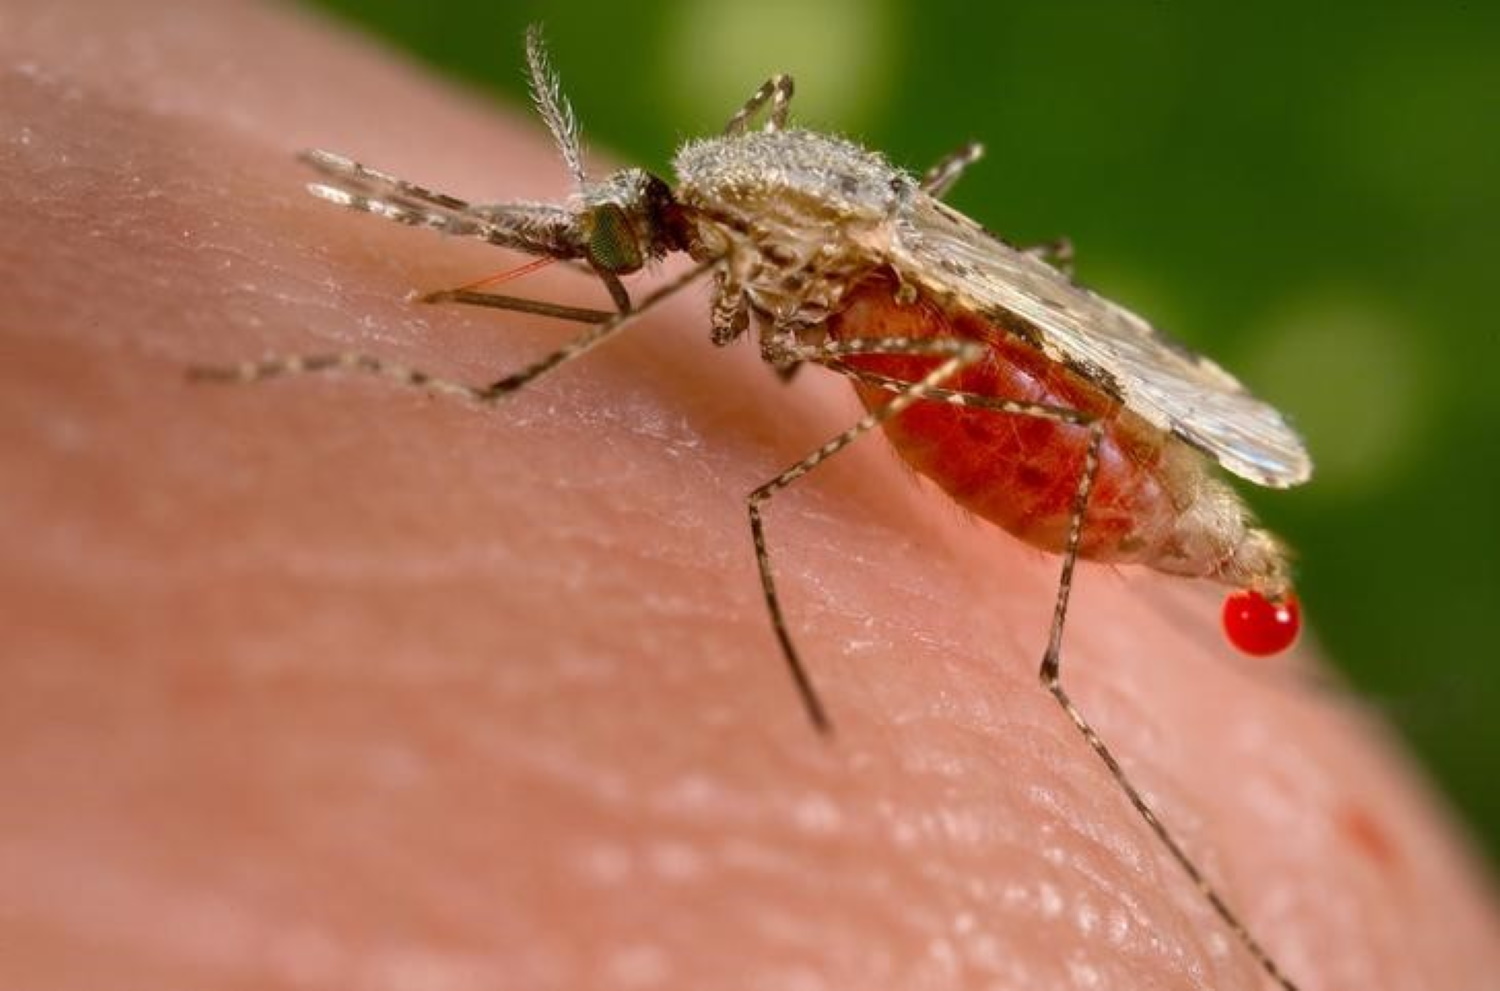 Ελονοσία: Αυξάνεται ο κίνδυνος εμφάνισής της στην Ελλάδα έως το 2050 λόγω κλιματικής αλλαγής